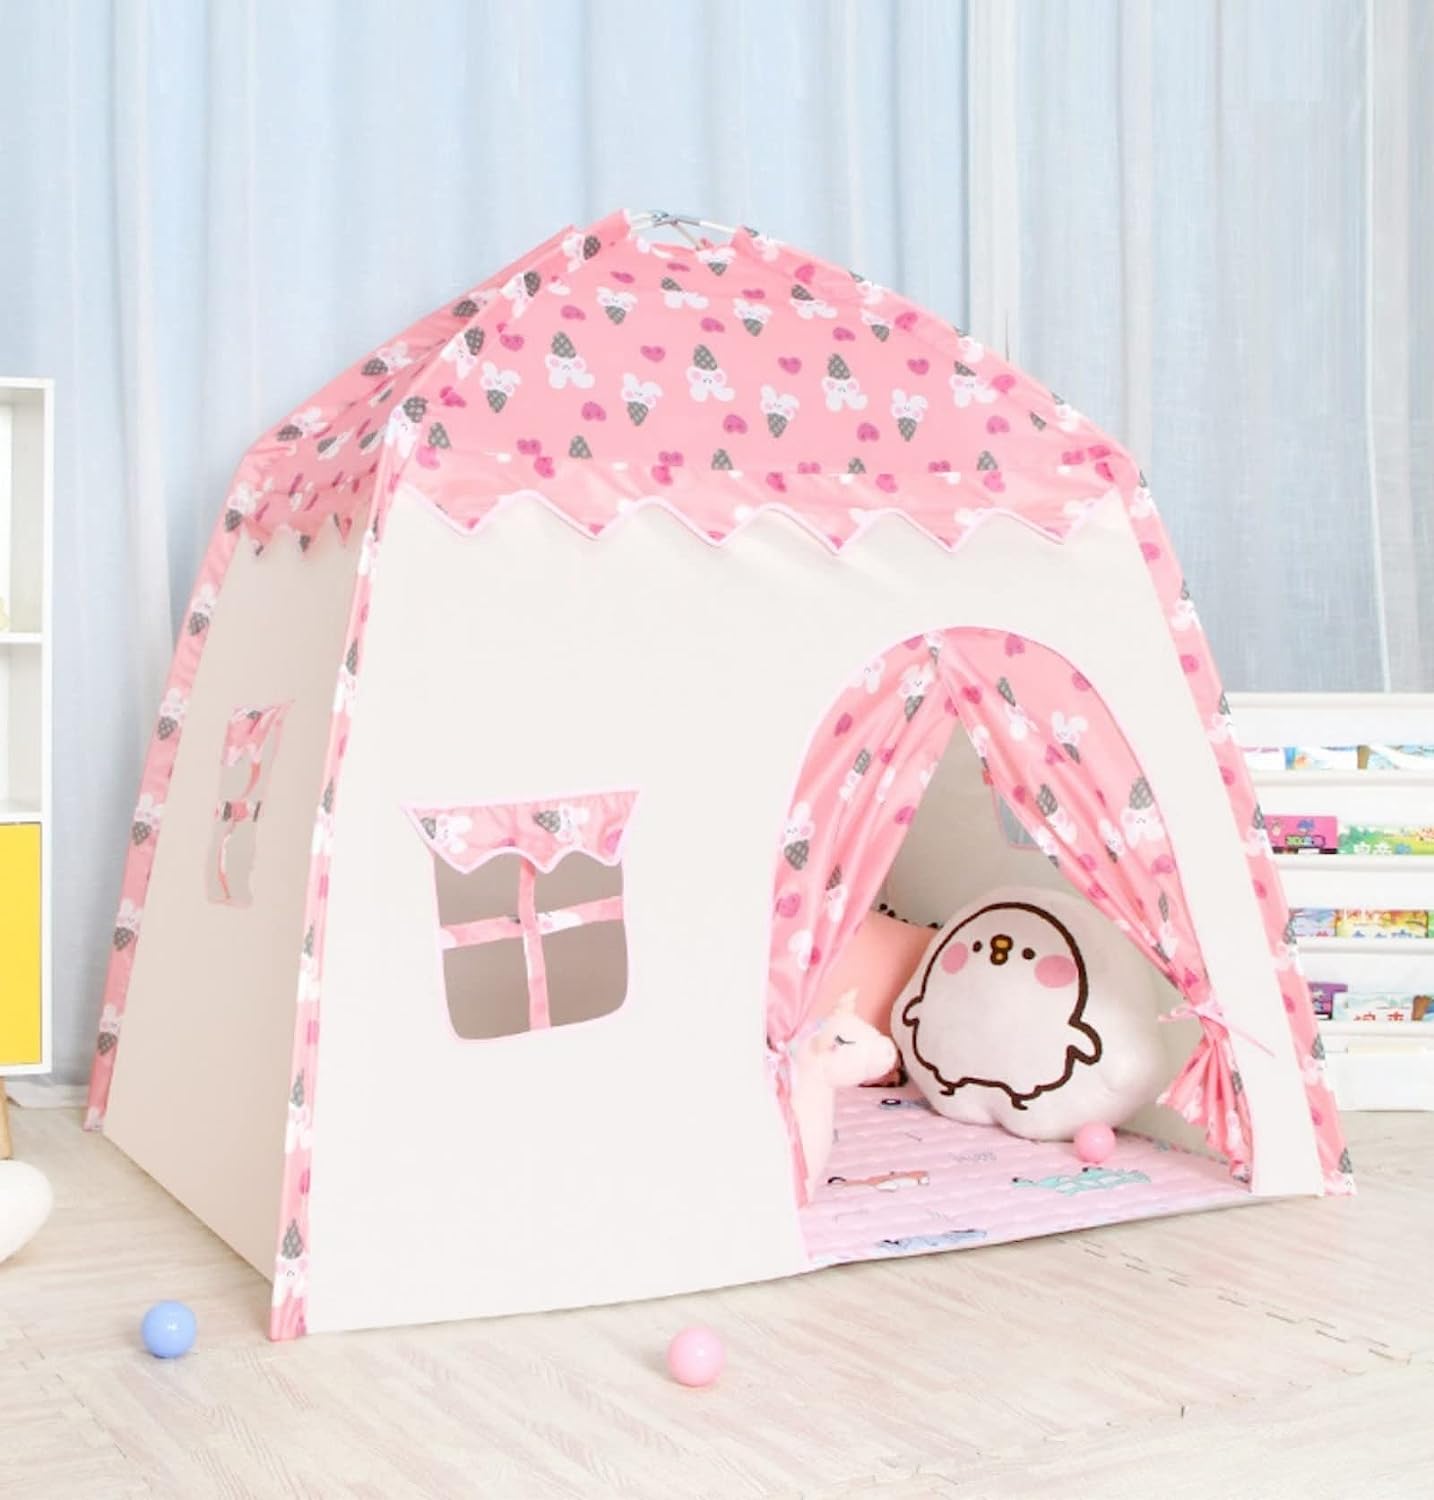 Pink Kids Pop Up Tent Cartoon Side View